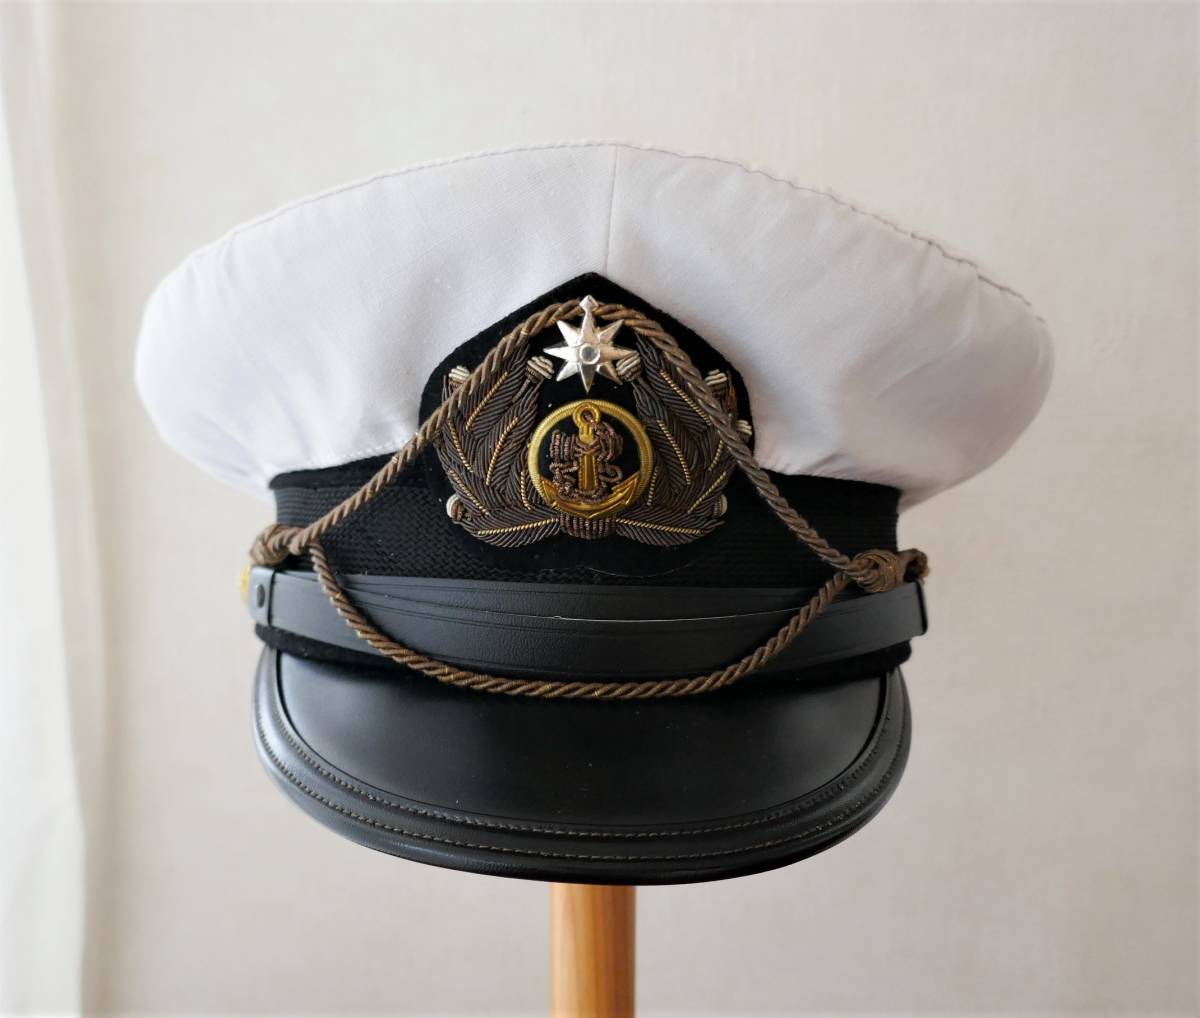 3499 旧日本軍日本海軍予備士官制帽 レプリカ56cm コンパス章軍帽コスプレ 日本代購代bid第一推介 Funbid